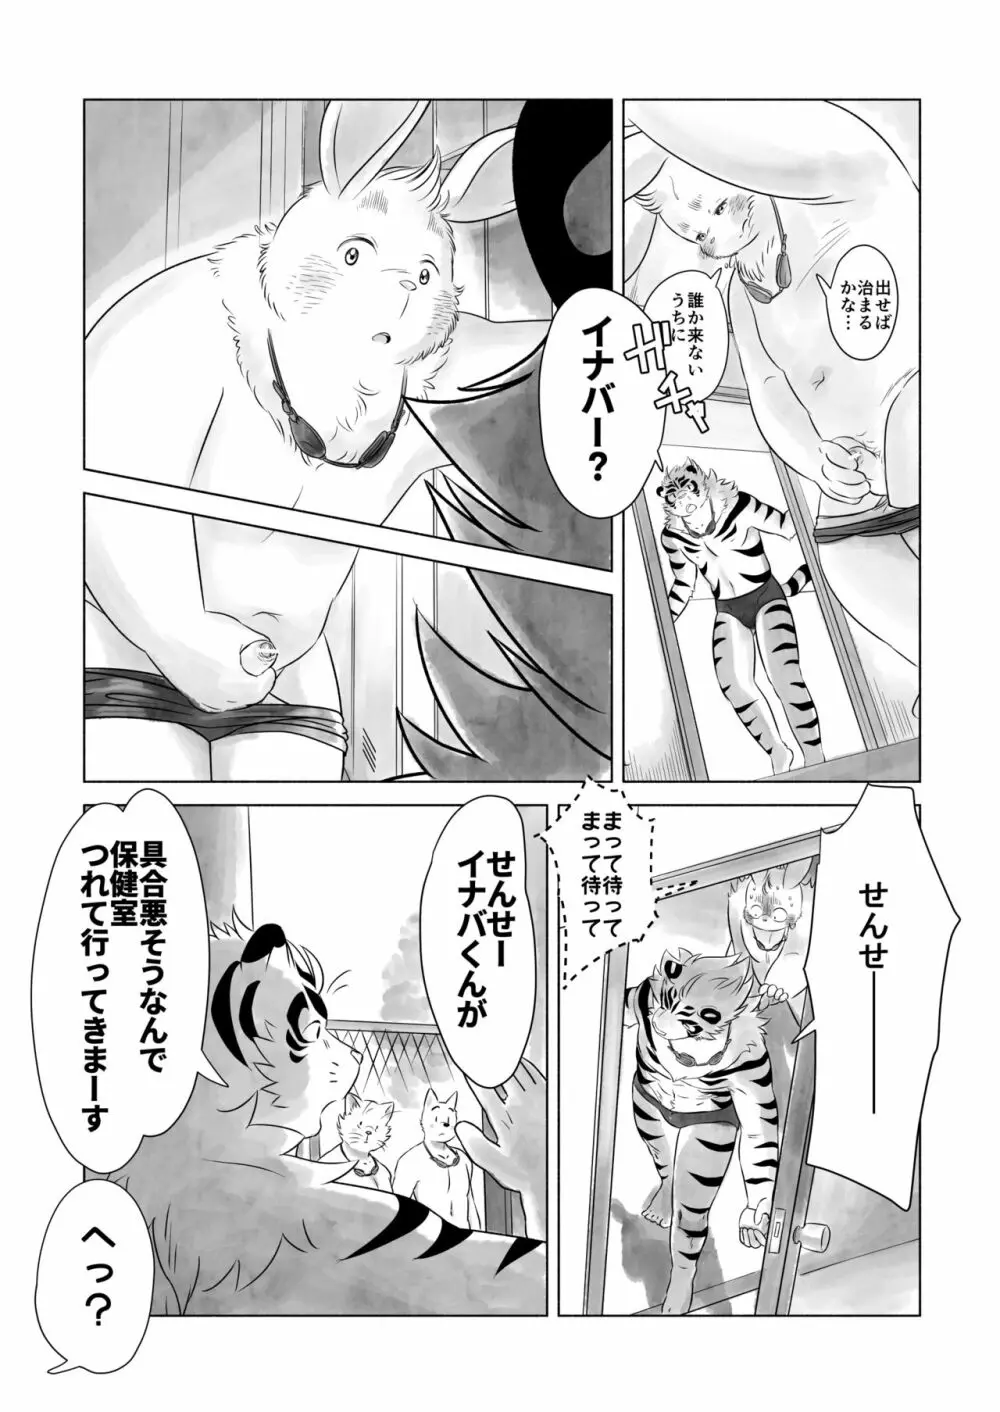 Koda_kota - Bunny and Tiger + extras Page.5